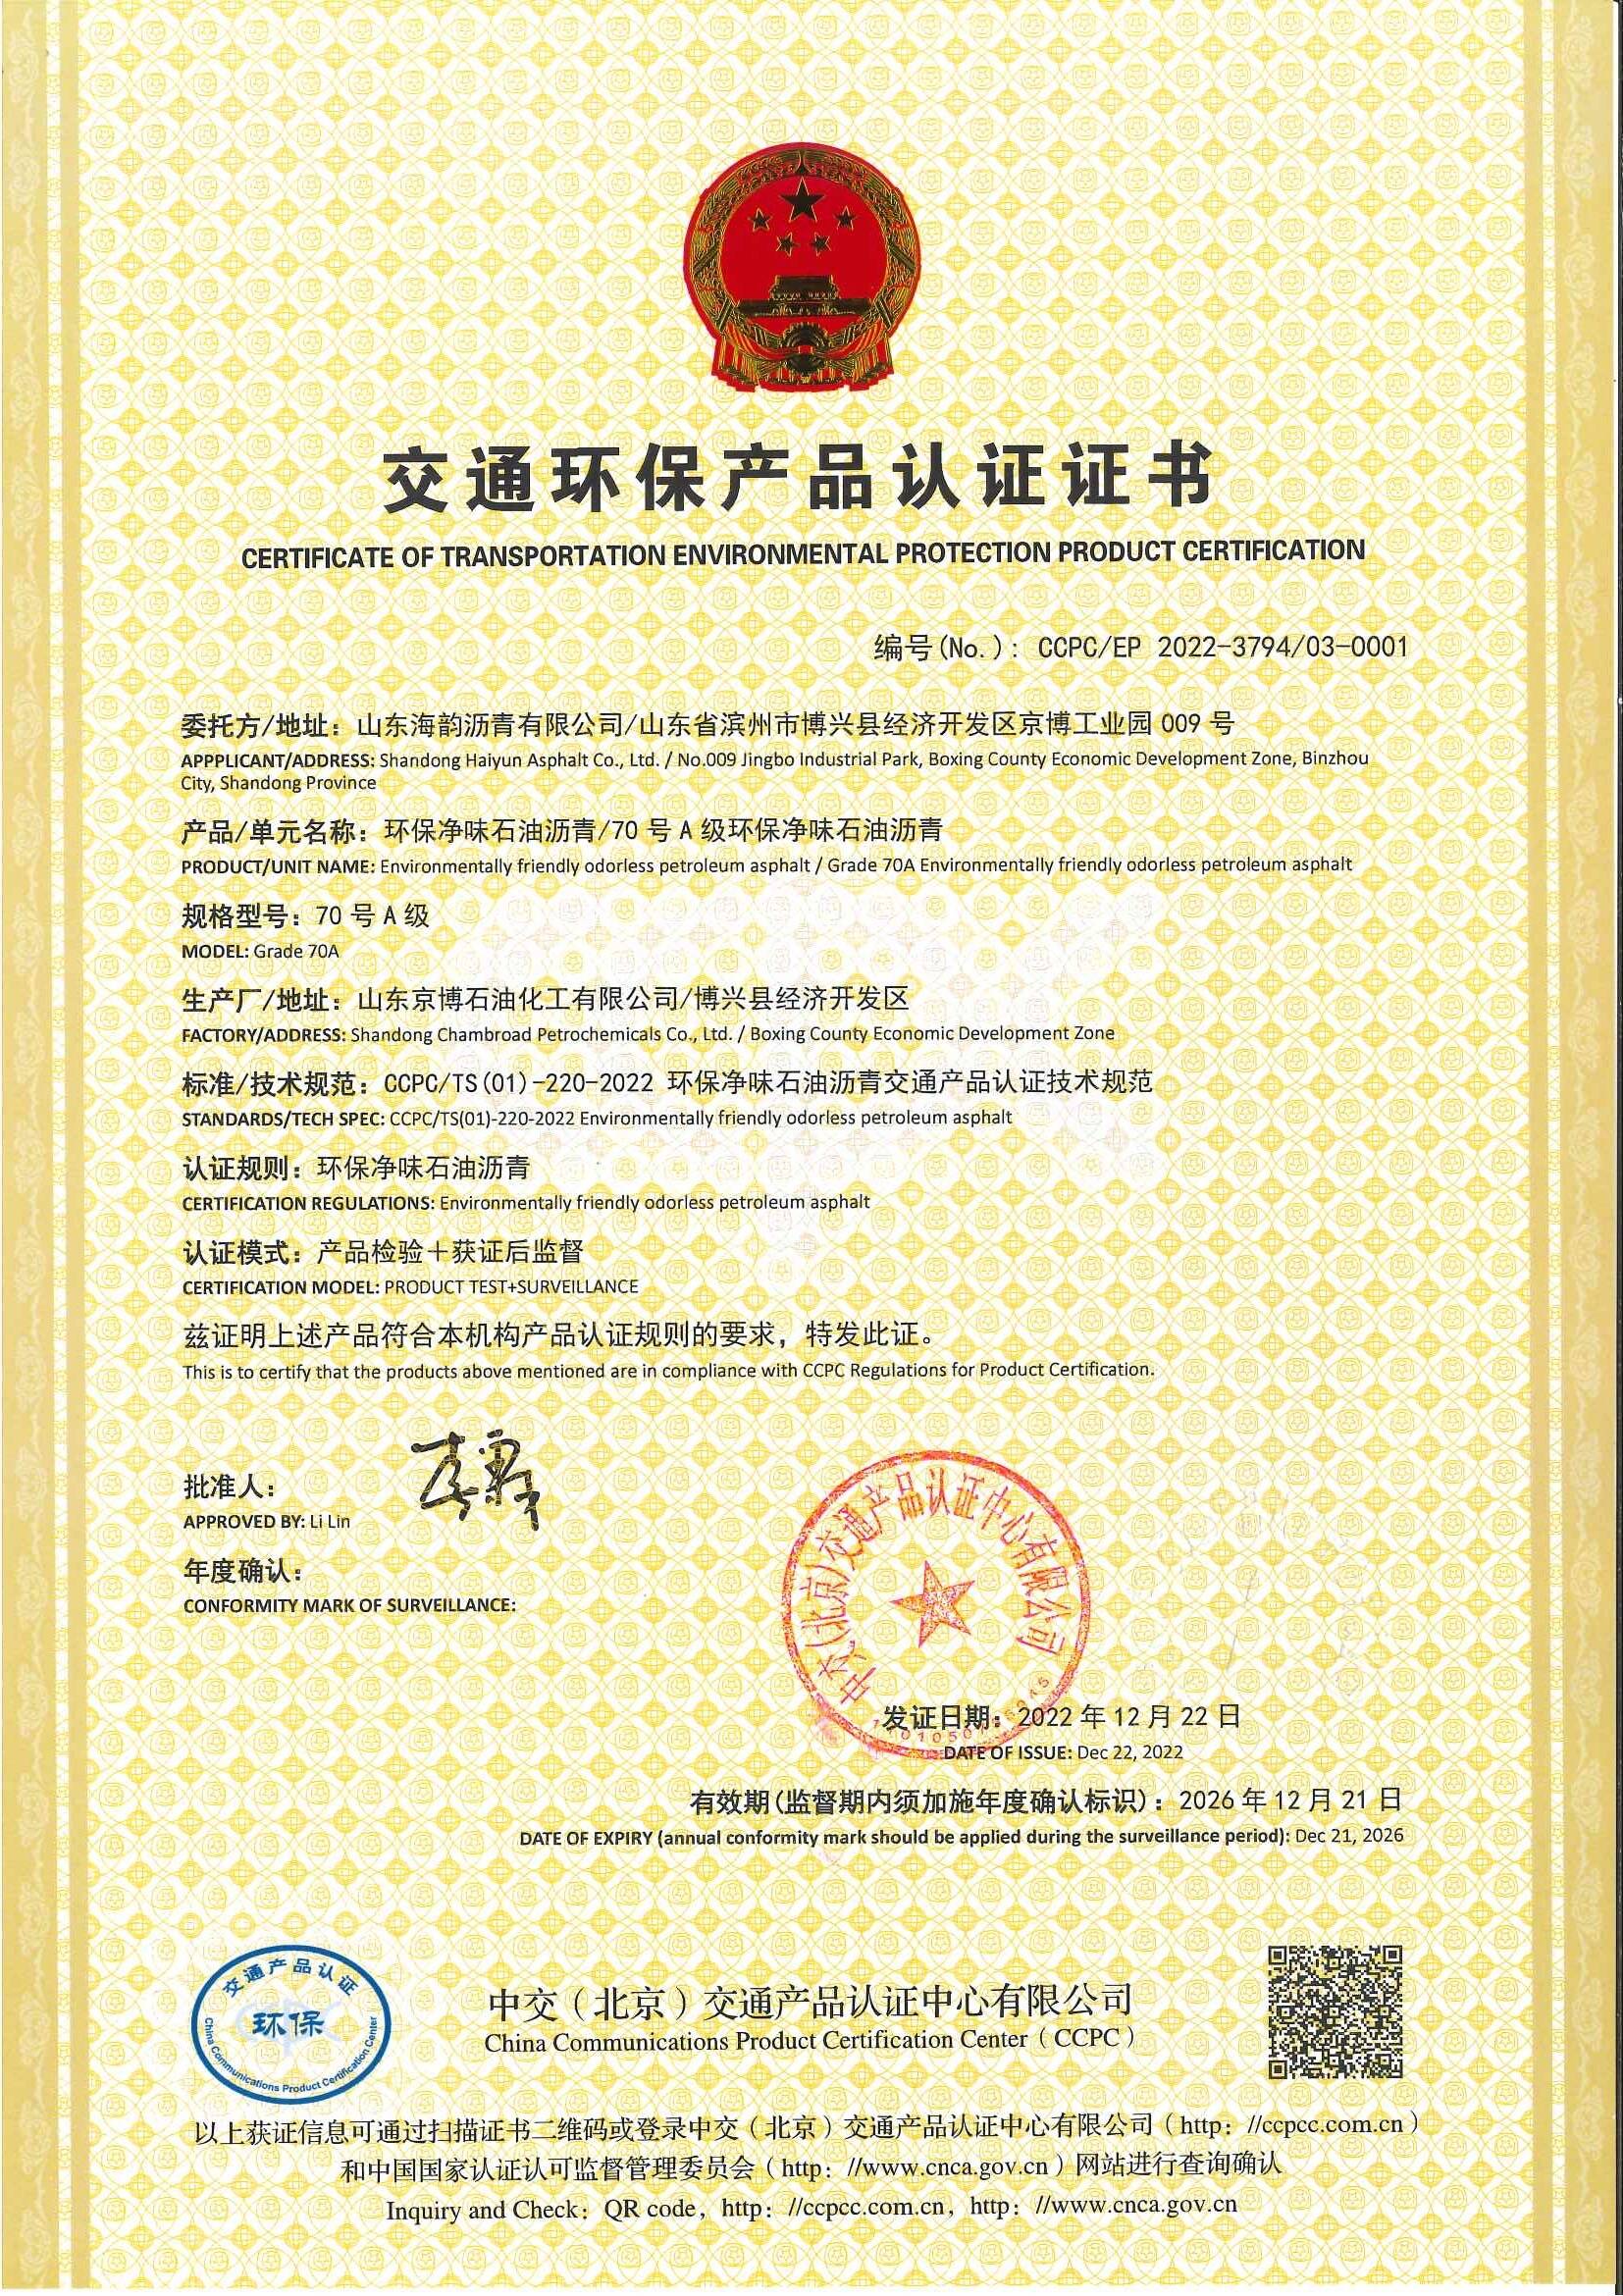 京博控股集团海韵沥青两项产品通过CCPC交通产品认证